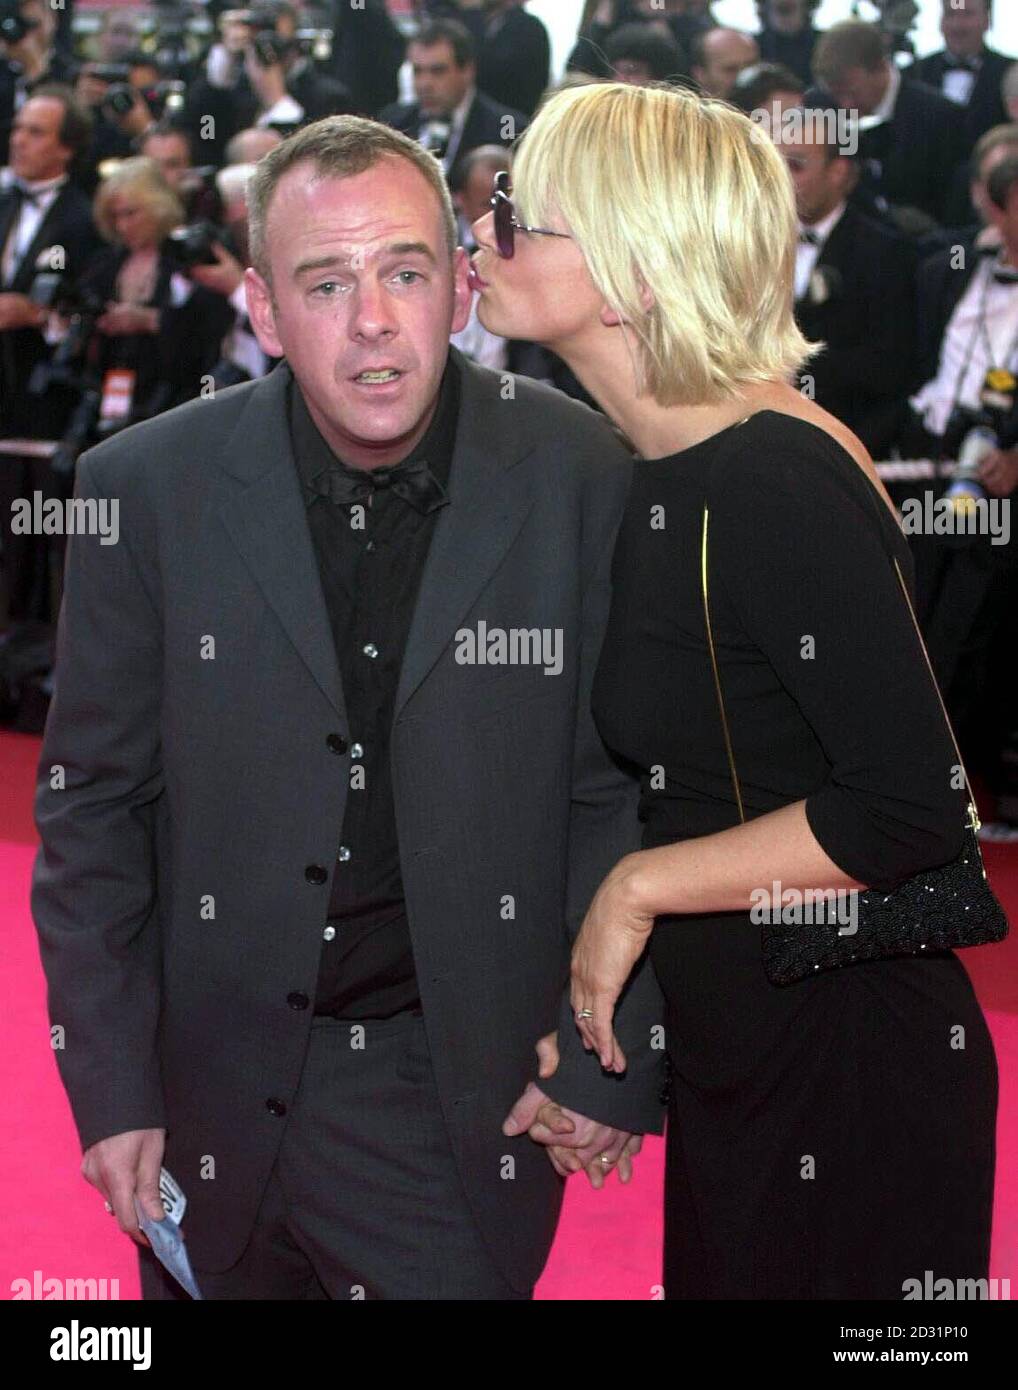 Norman Cook, alias Fatboy Slim et Zoe ball arrivent au Palais des Festivals, au Festival de Cannes, en France.Le film de Baz Luhrmann, Moulin Rouge, dans lequel Nicole Kidman est vedette, ouvre le 54ème Festival. Banque D'Images